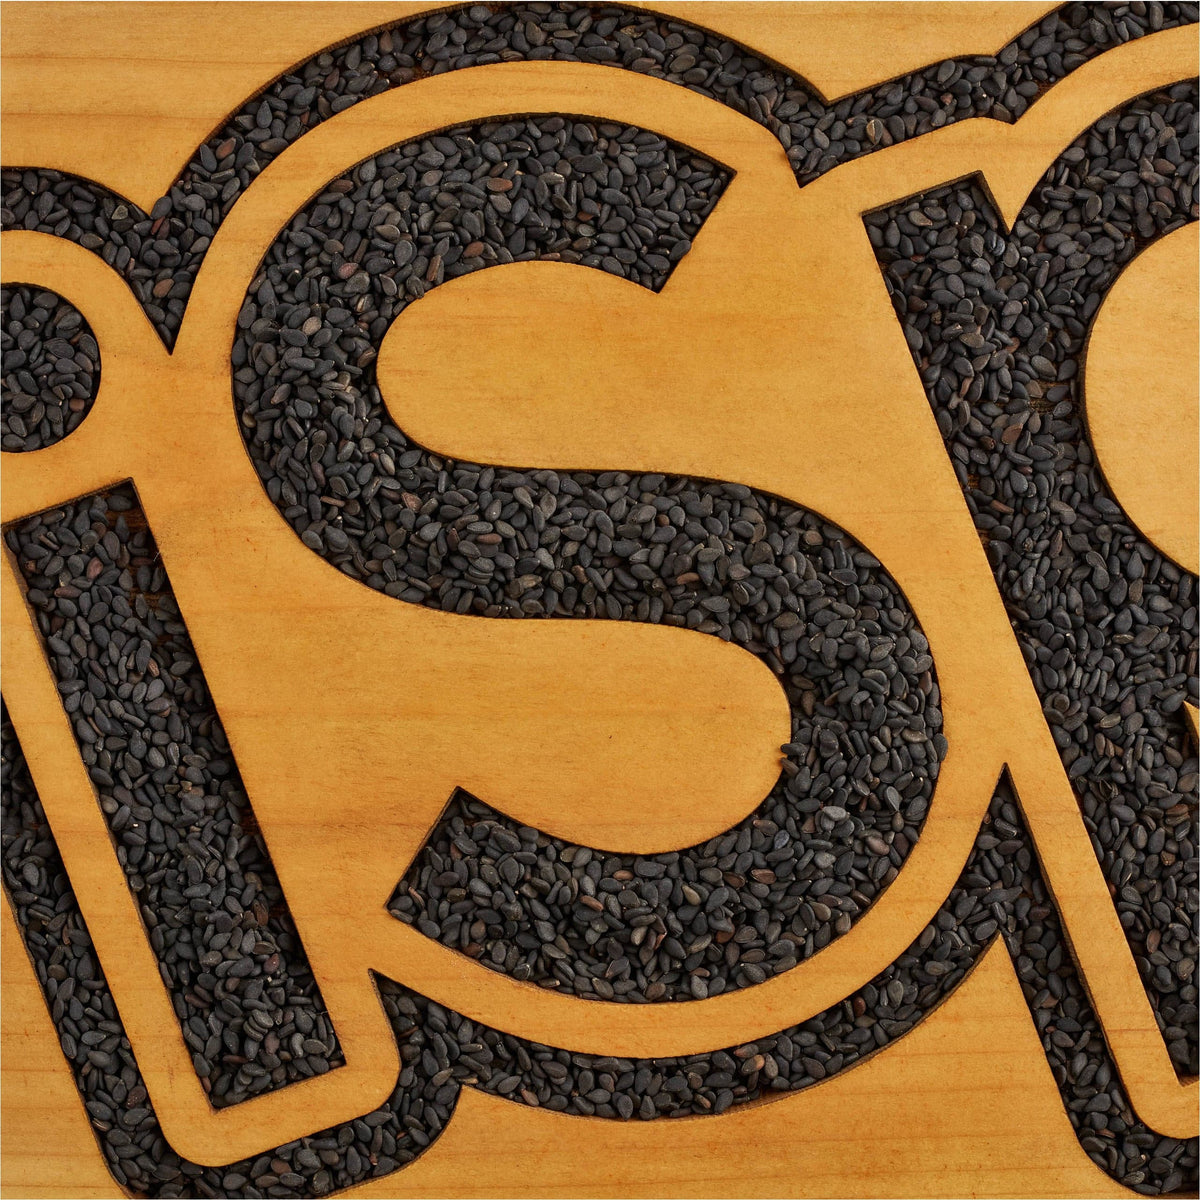 7 Delicious Recipes Using Black Sesame Seeds